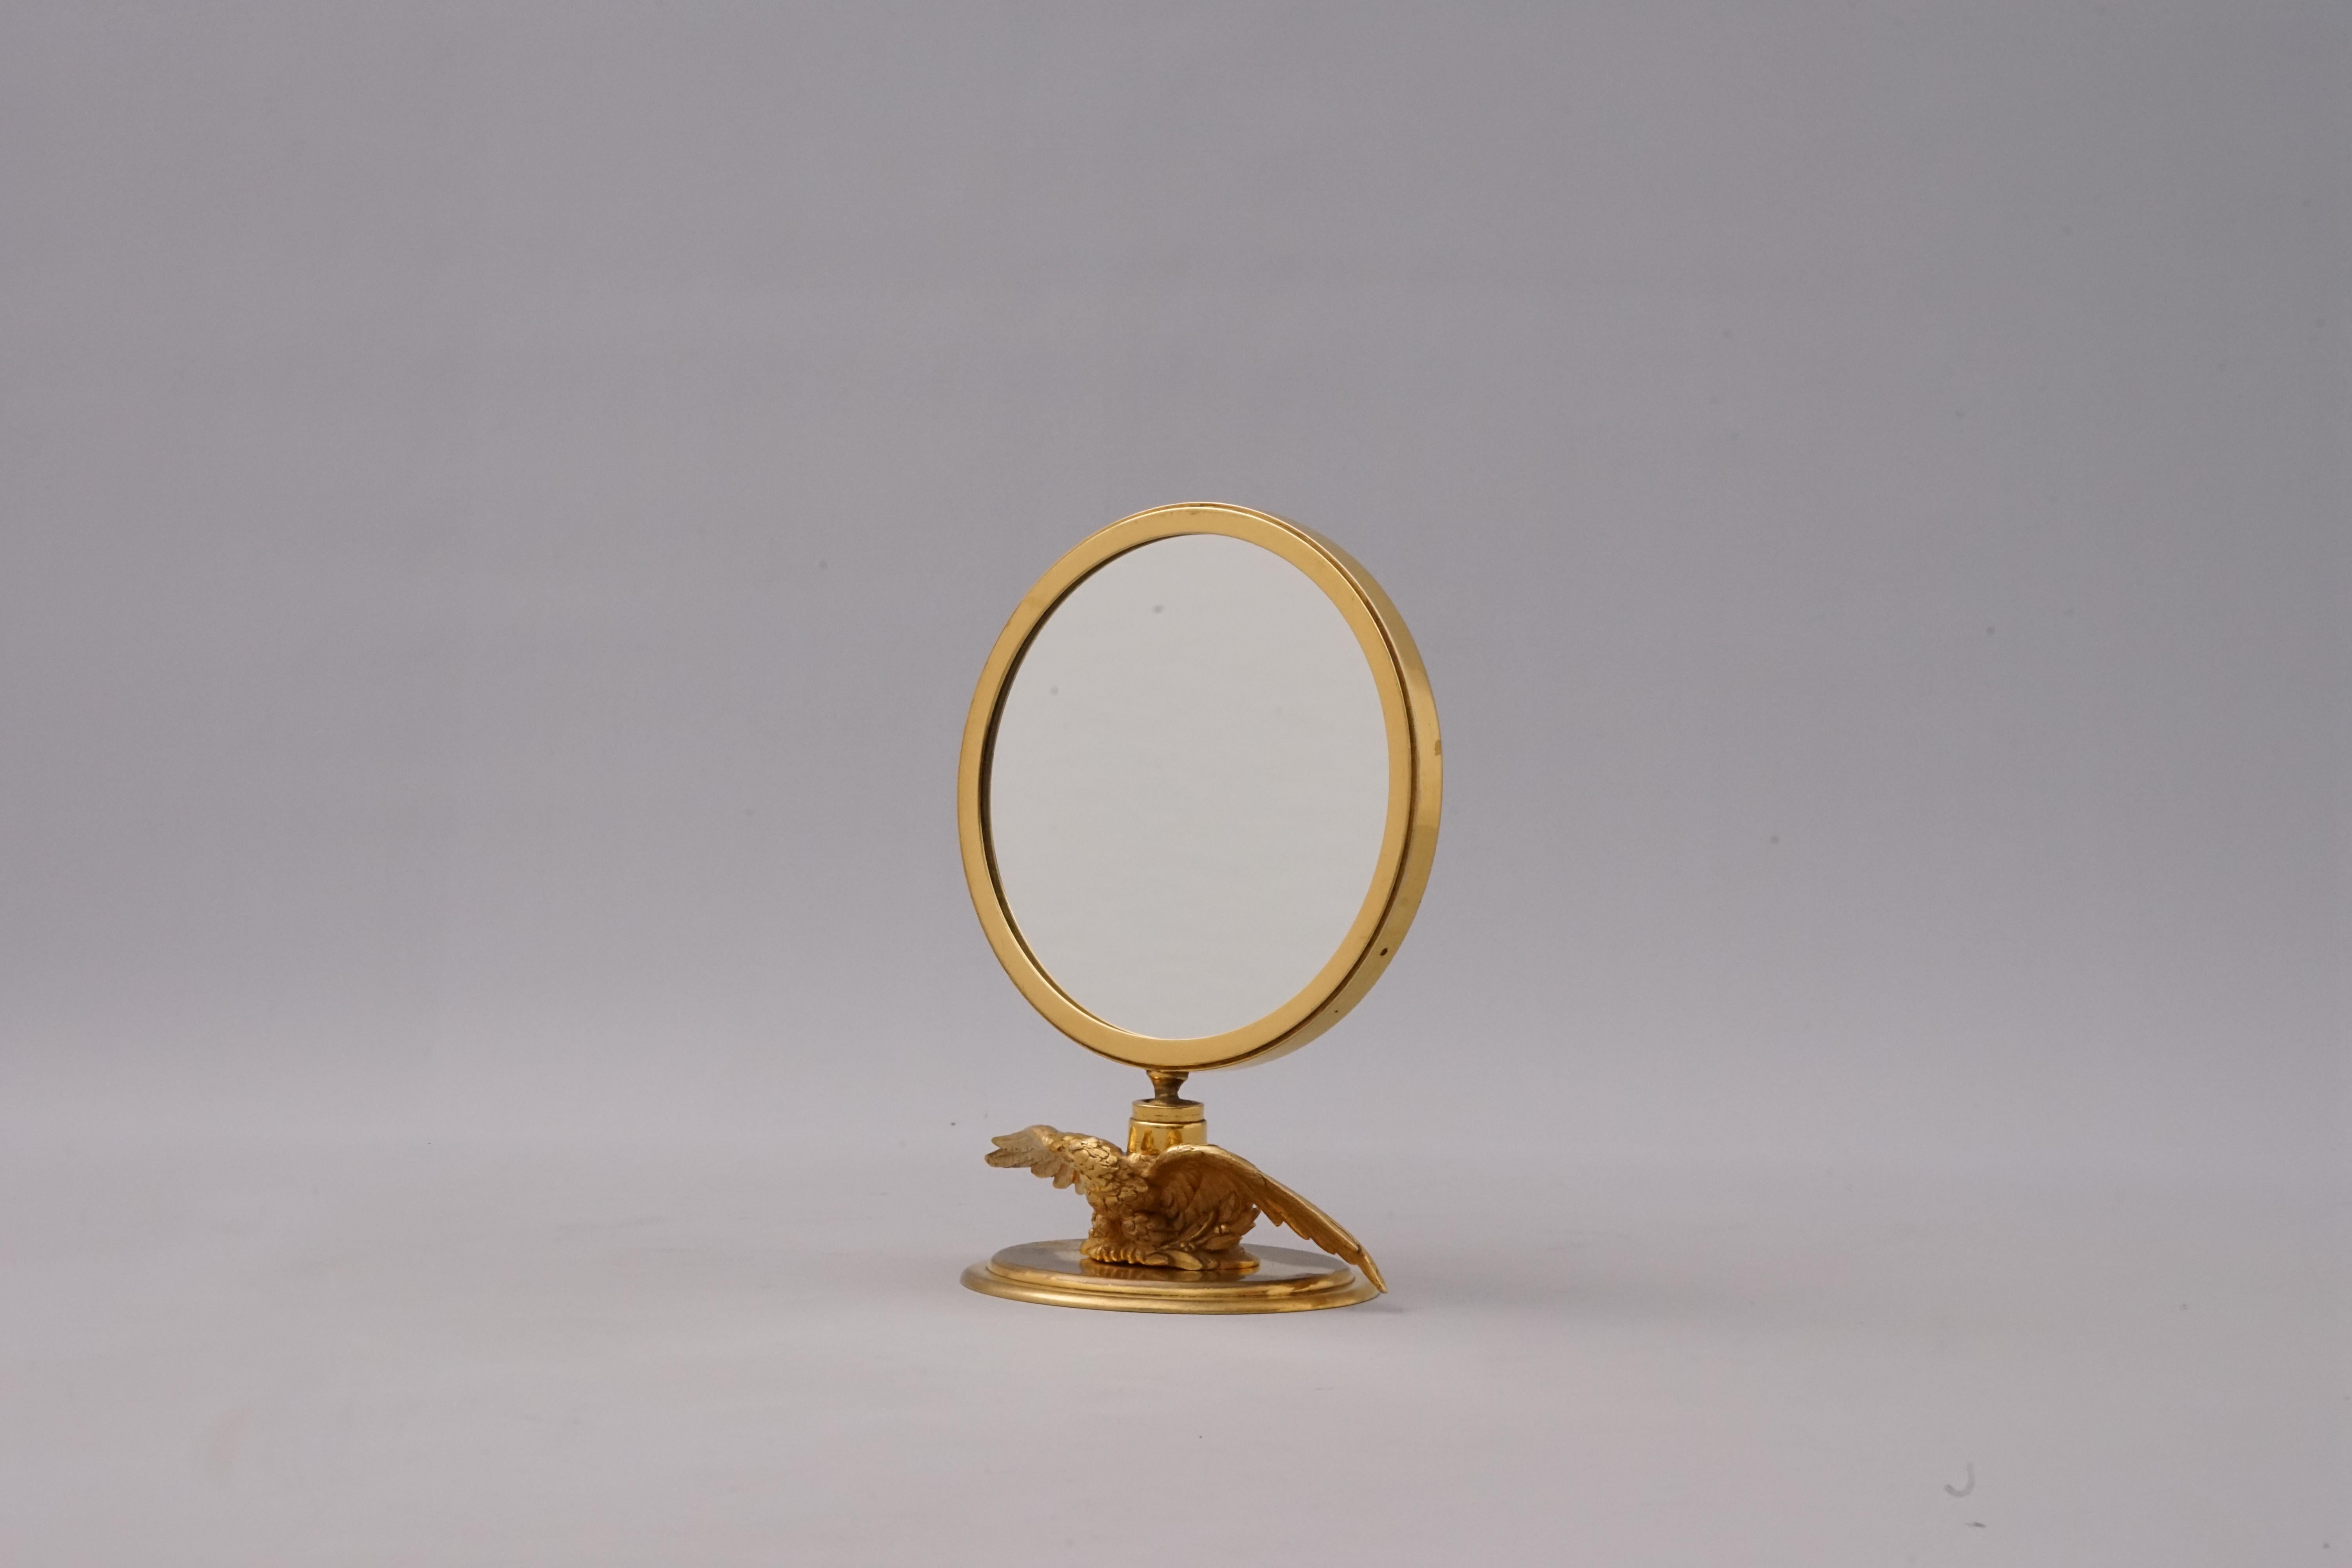 Ein sehr seltener Tischspiegel von Hermès Paris - ein Adler, der mit ausgebreiteten Flügeln auf einem Sockel sitzt und die Schönheit des Mondes auf seinem Rücken reflektiert.
 
Der runde Spiegel ist mit einem Kugelgelenk ausgestattet und kann